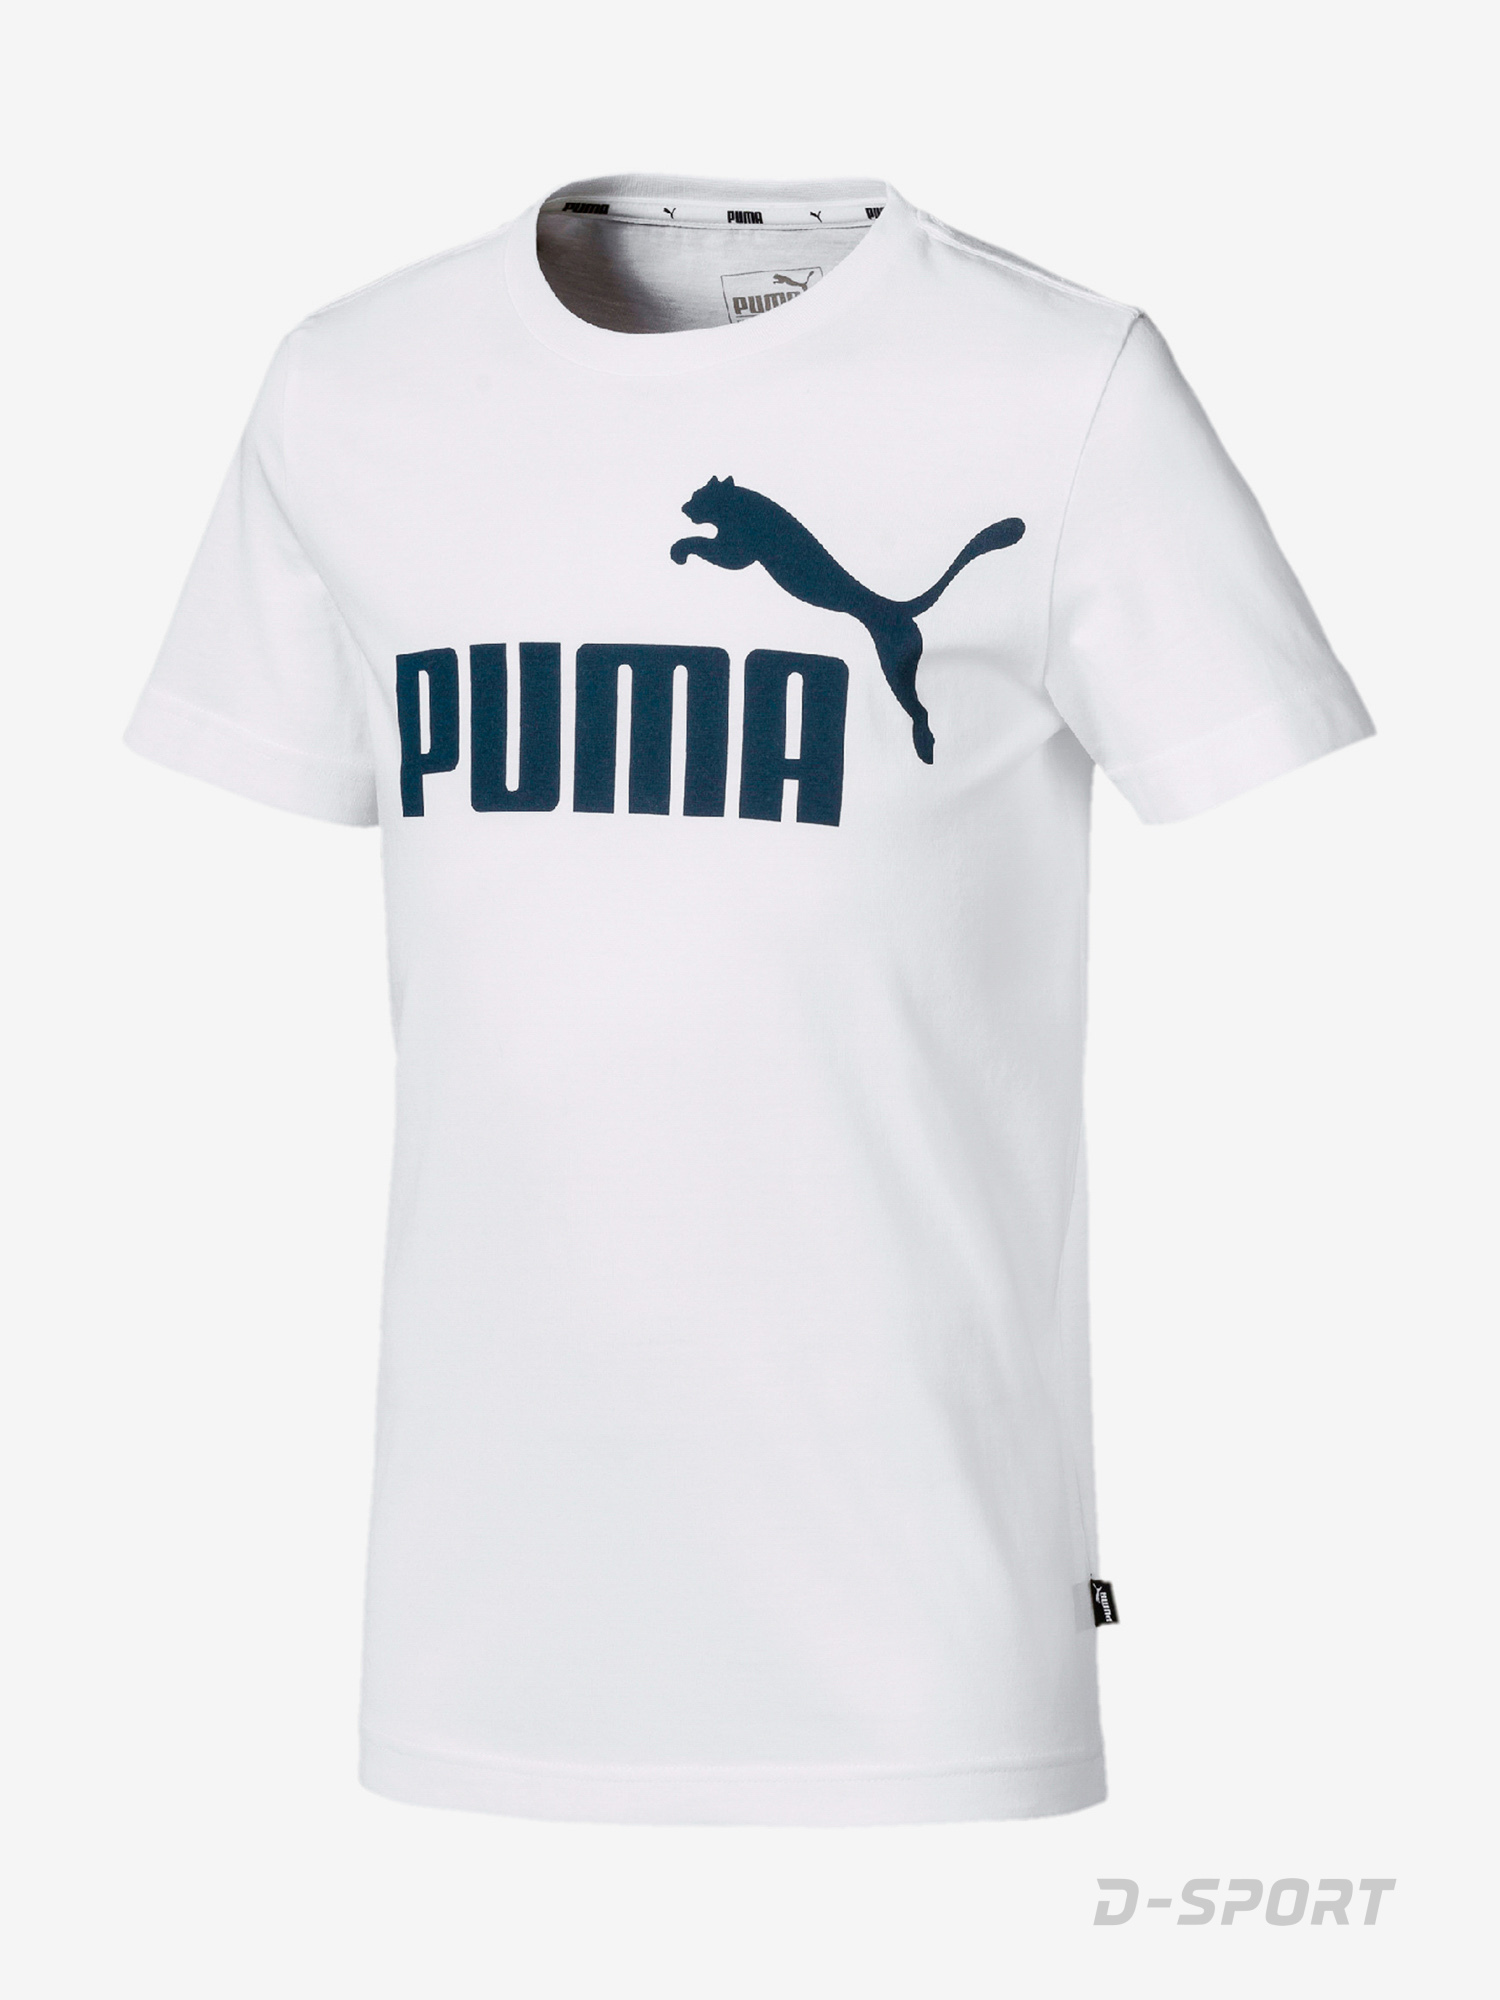 ESS Logo Tee B Puma White-Surf the web